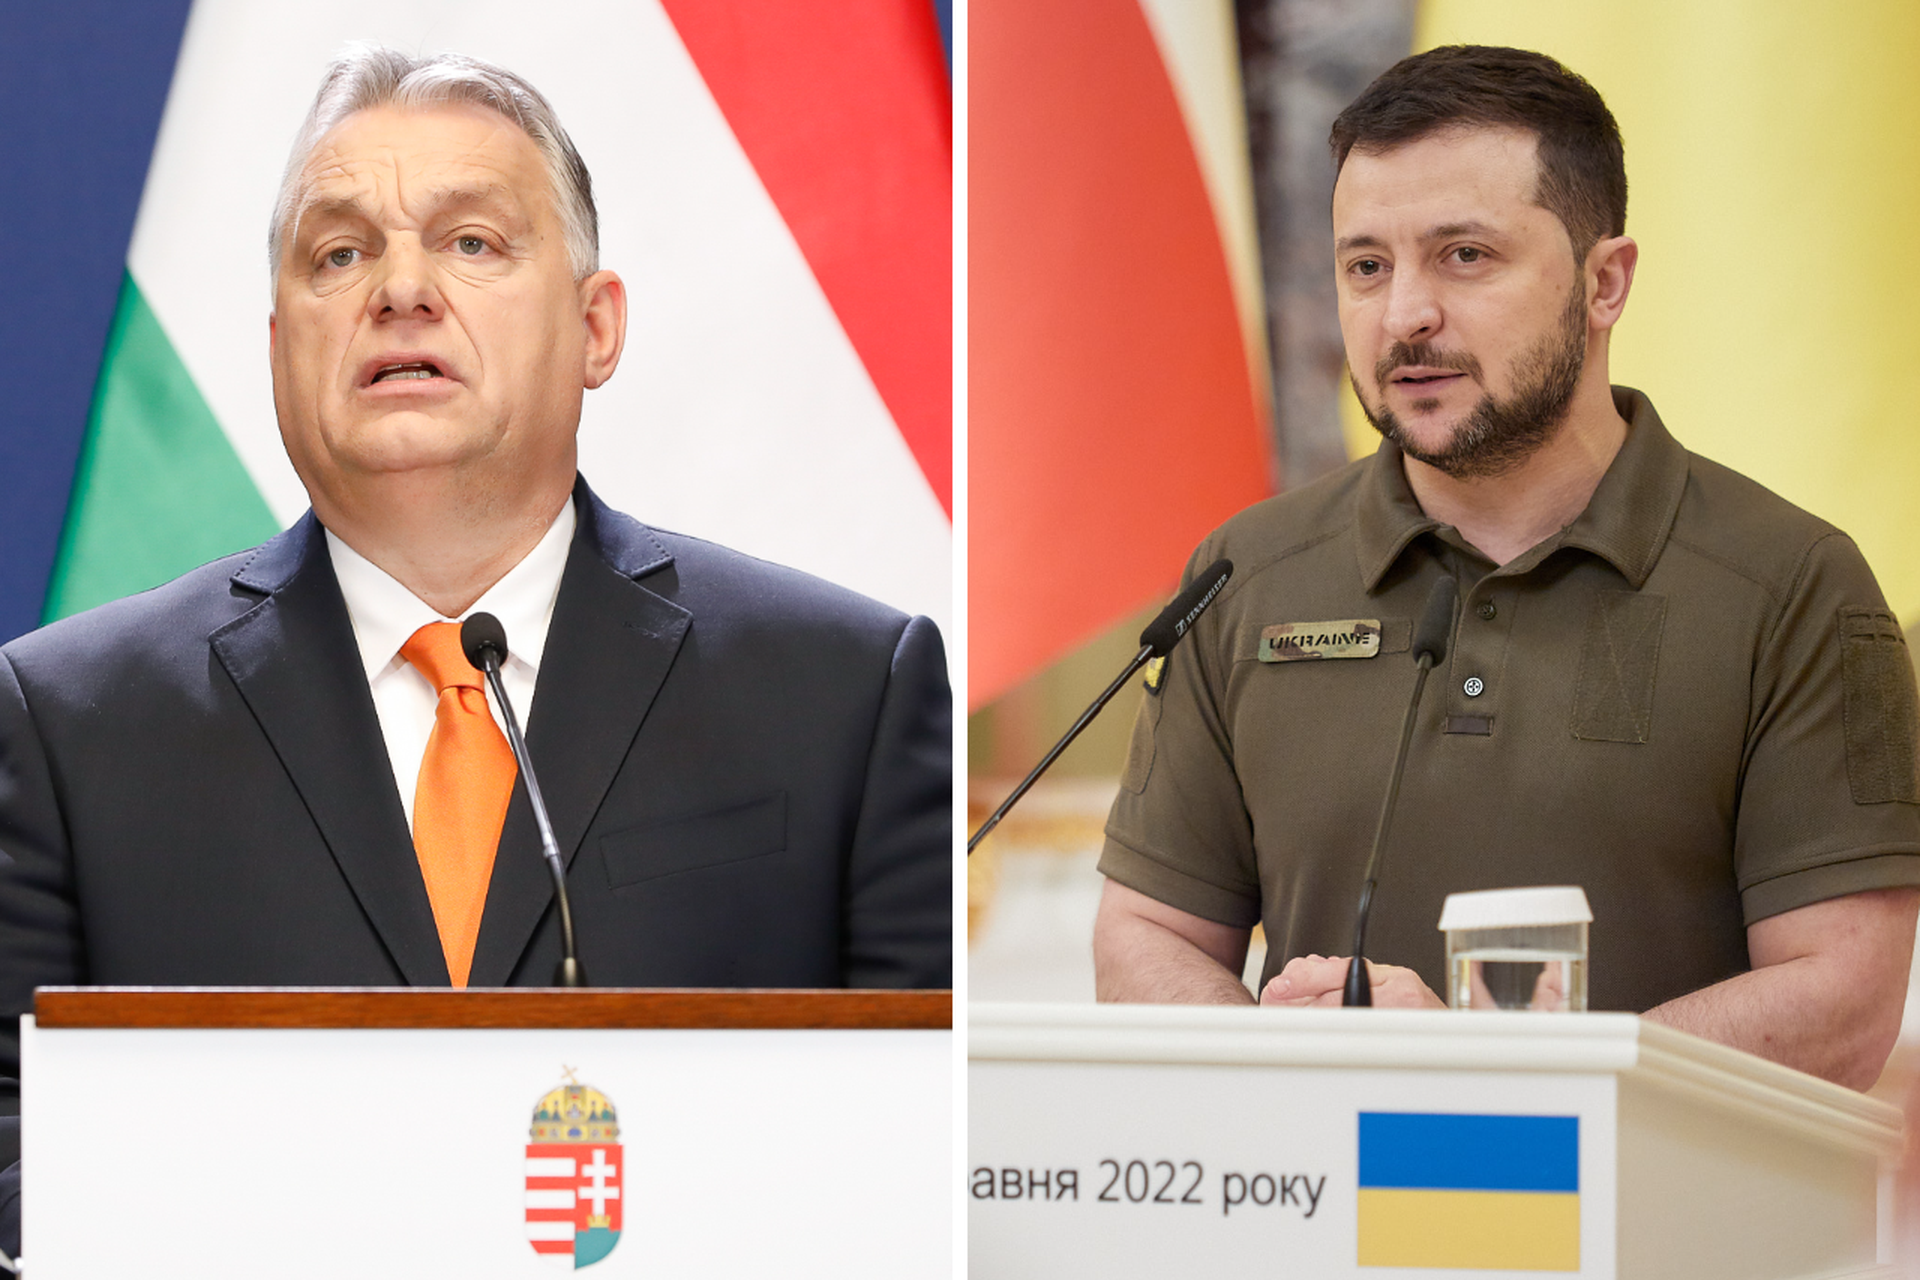 Орбан без сахара: сможет ли Зеленский уговорить Венгрию дать добро на членство Украины в ЕС